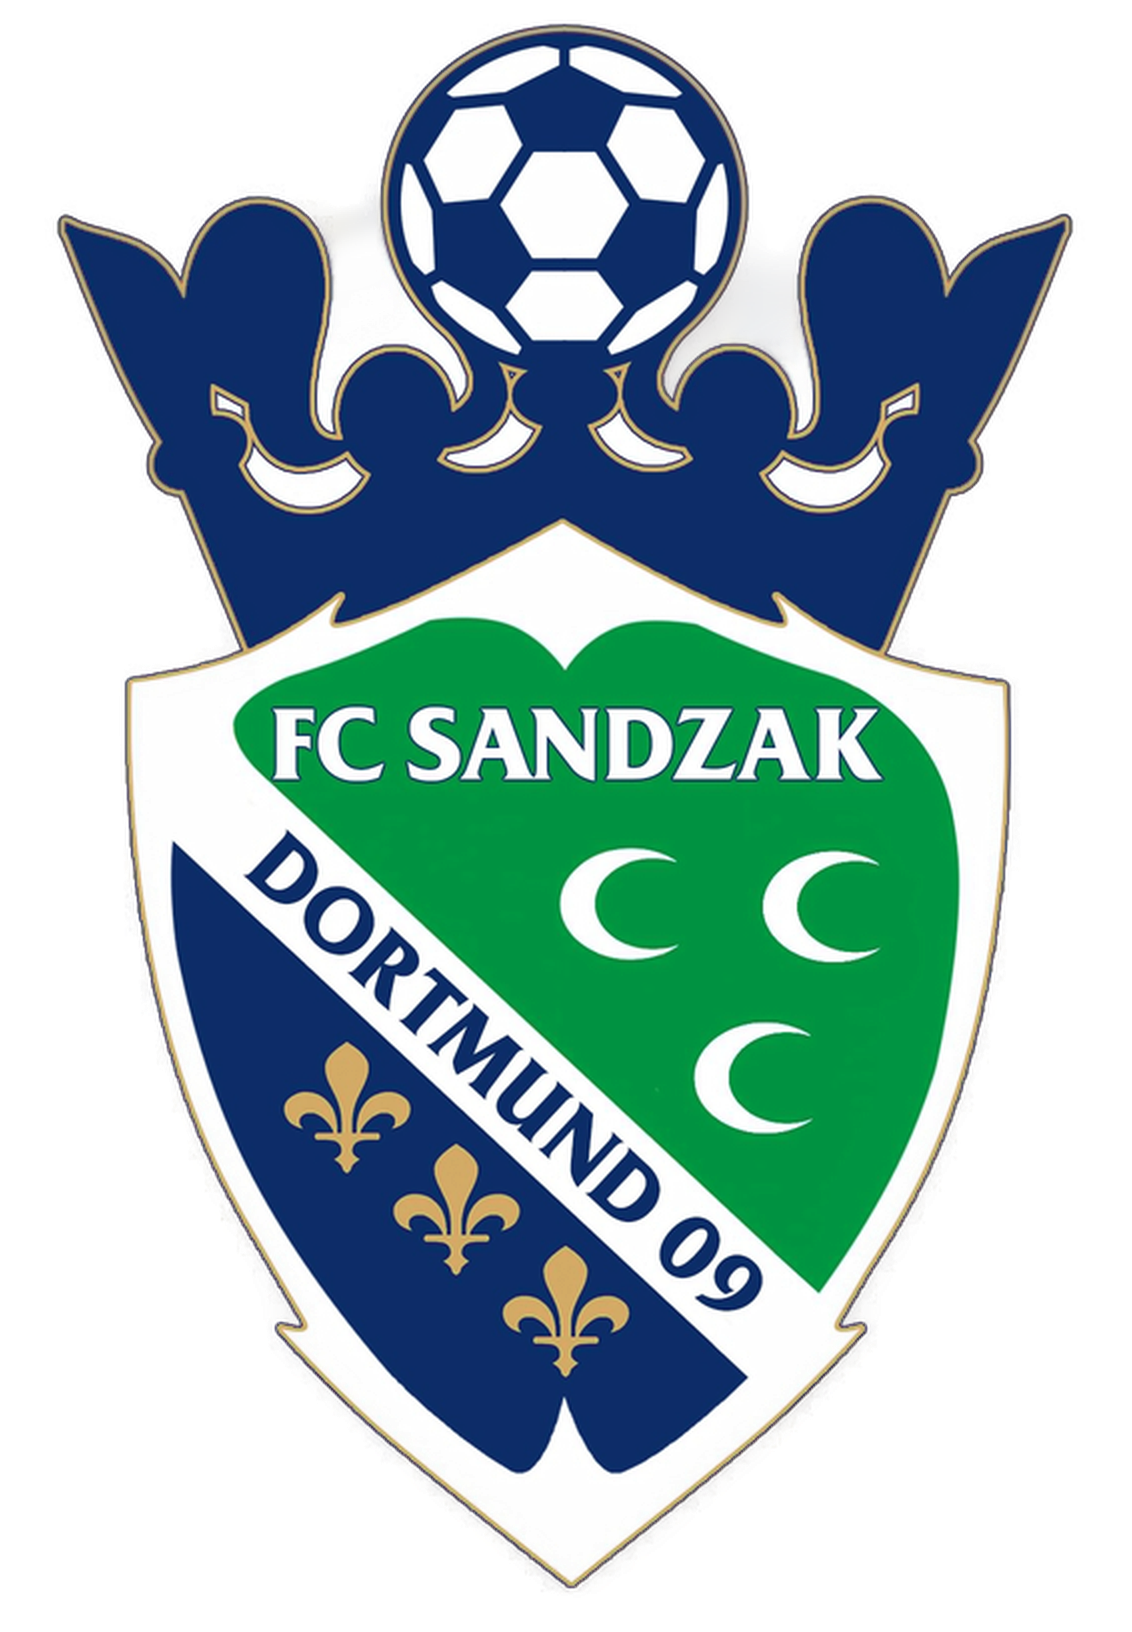 Wappen FC Sandzak Dortmund 2009 II